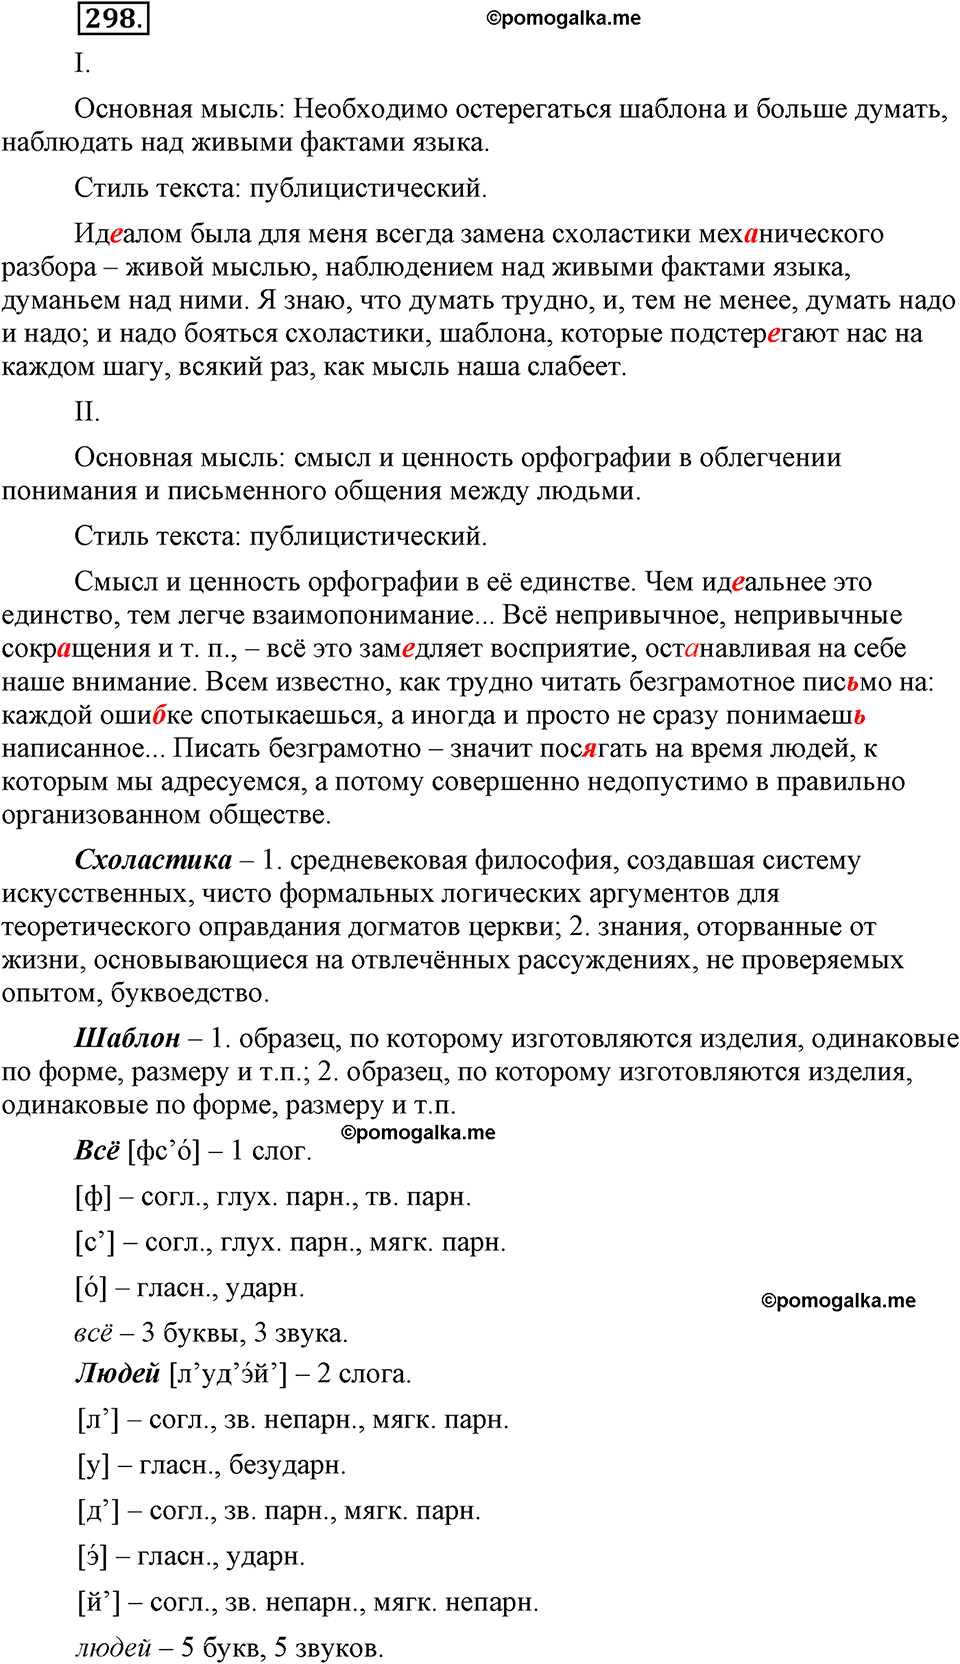 страница 139 номер 298 русский язык 9 класс Бархударов 2011 год